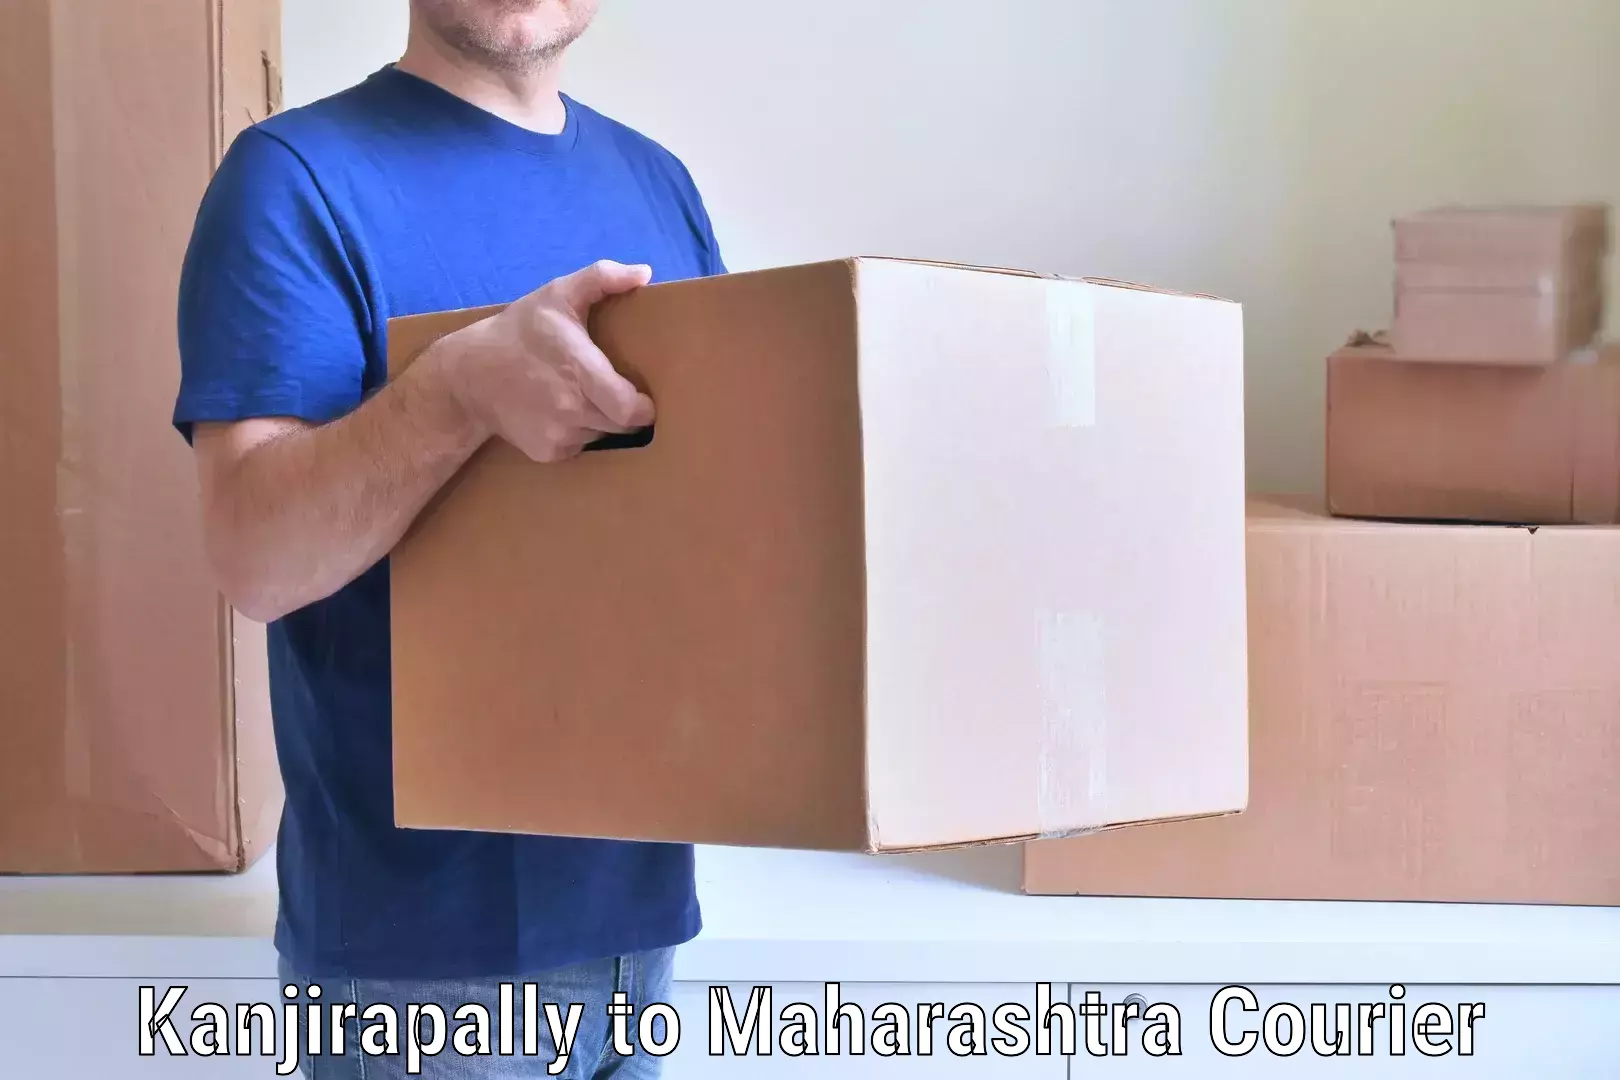 Moving and storage services Kanjirapally to Maharashtra